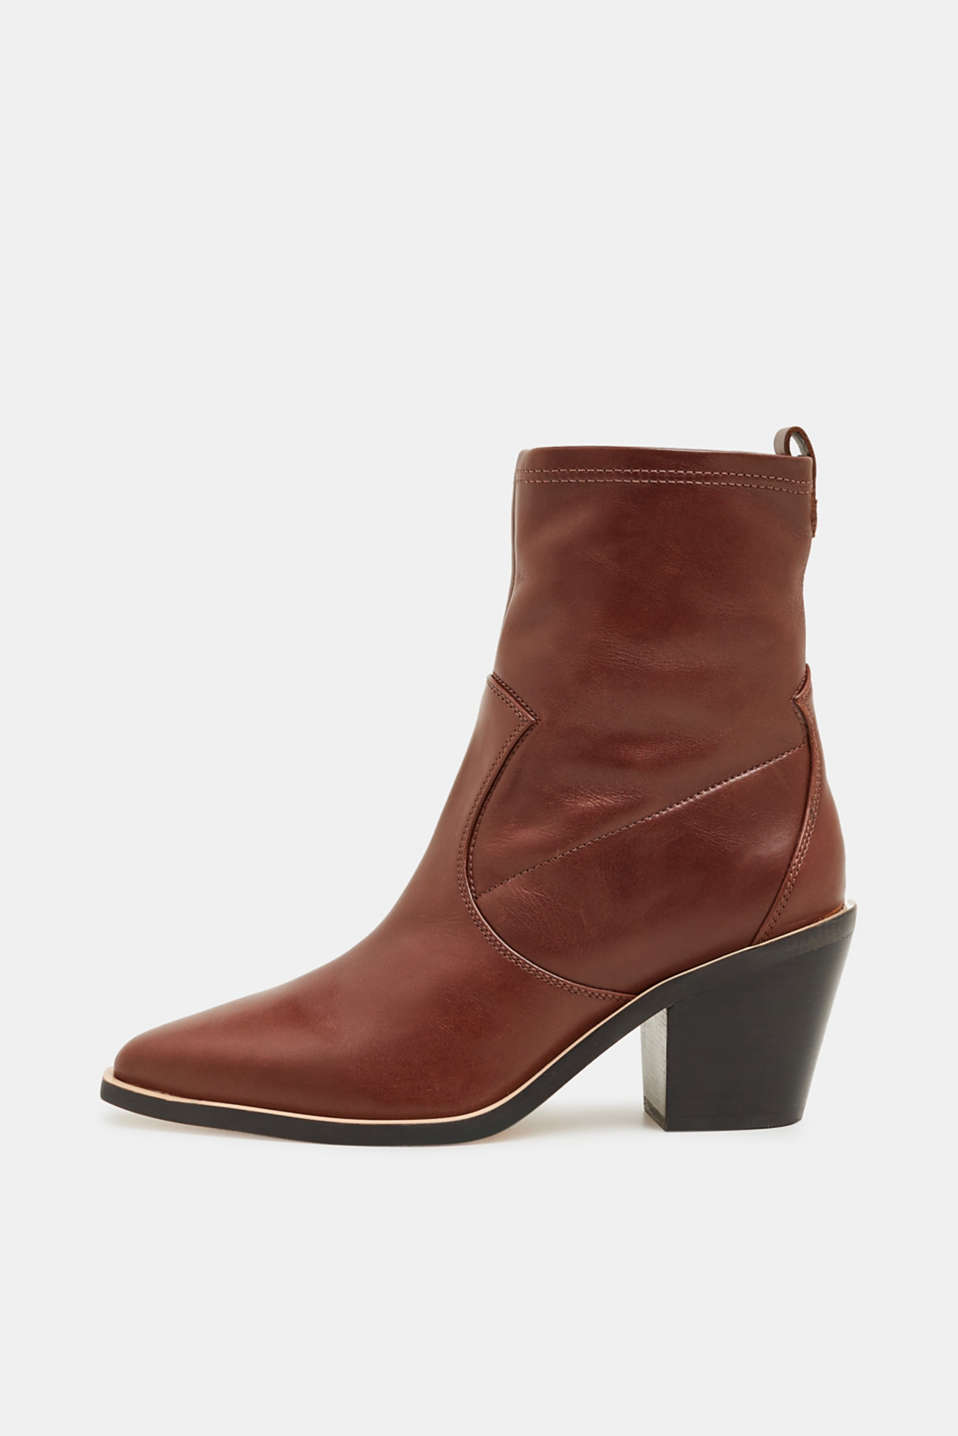 Esprit - Leather cowboy boots at our Online Shop